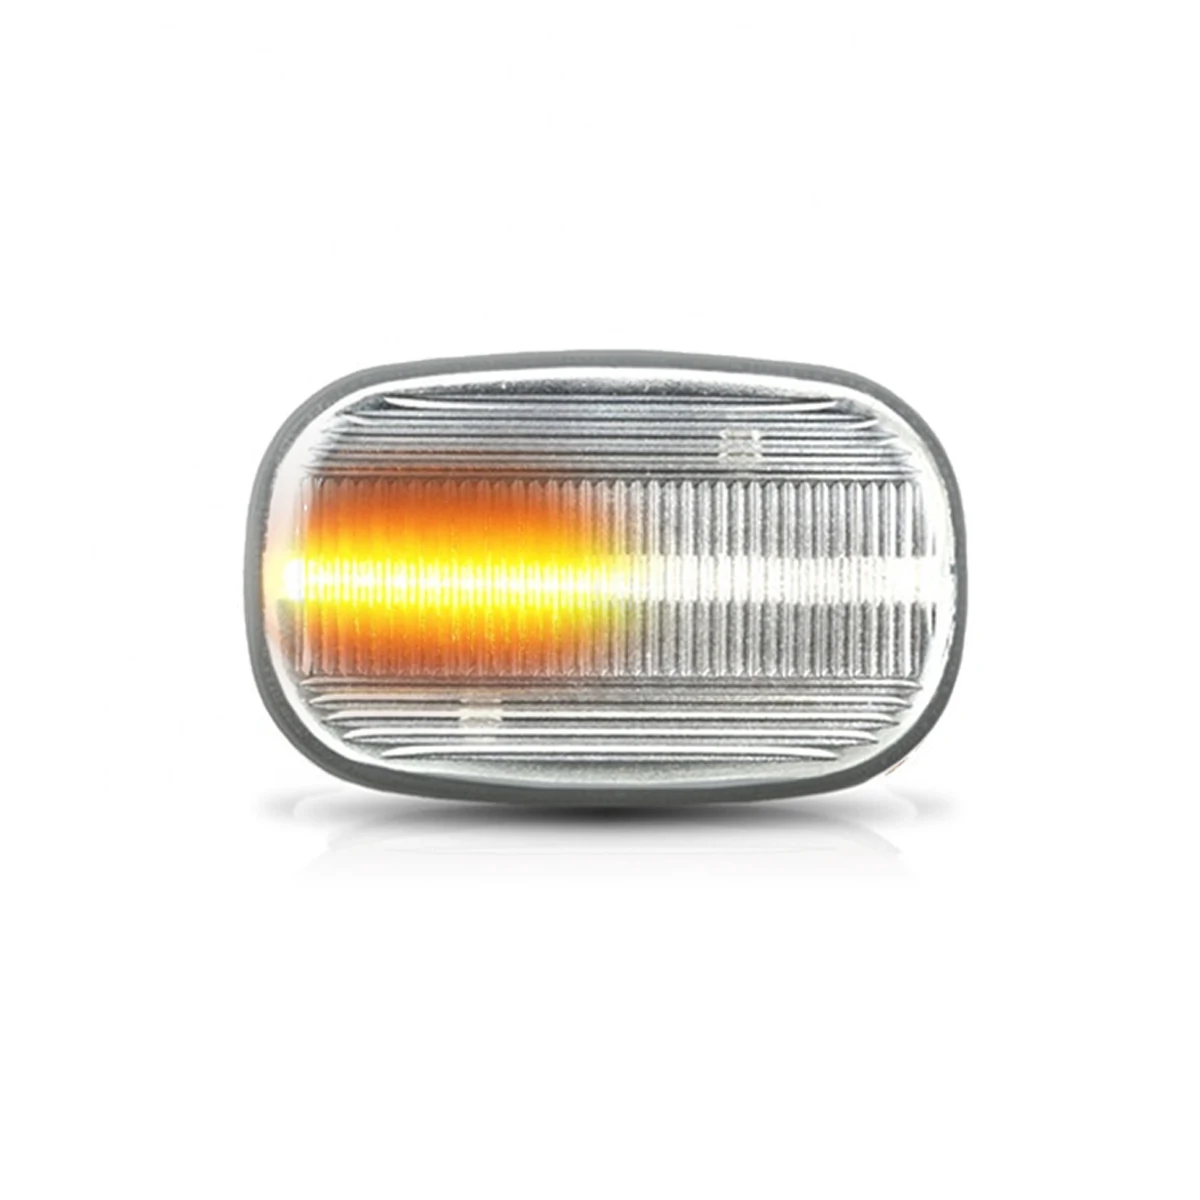 2 шт течет поворотов светильник динамические светодиодные боковые габаритные Панель лампа для Защитные чехлы для сидений, сшитые специально для Toyota Corolla Carina E T19 Corolla E10/E11/E12 селика